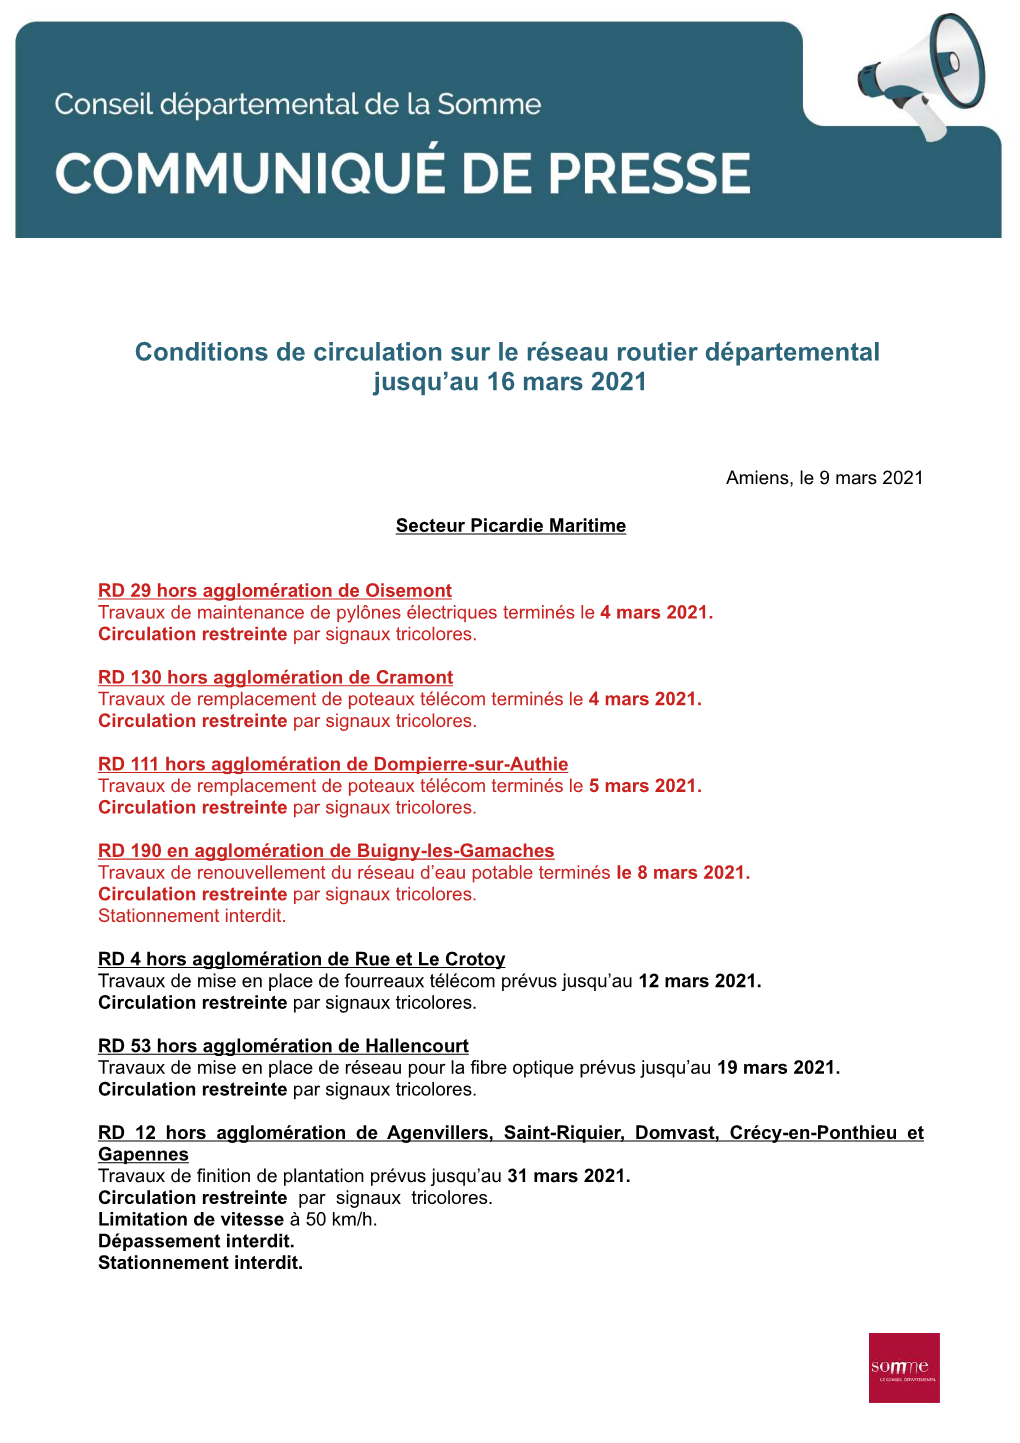 Conditions De Circulation Sur Le Réseau Routier Départemental Jusqu'au 16